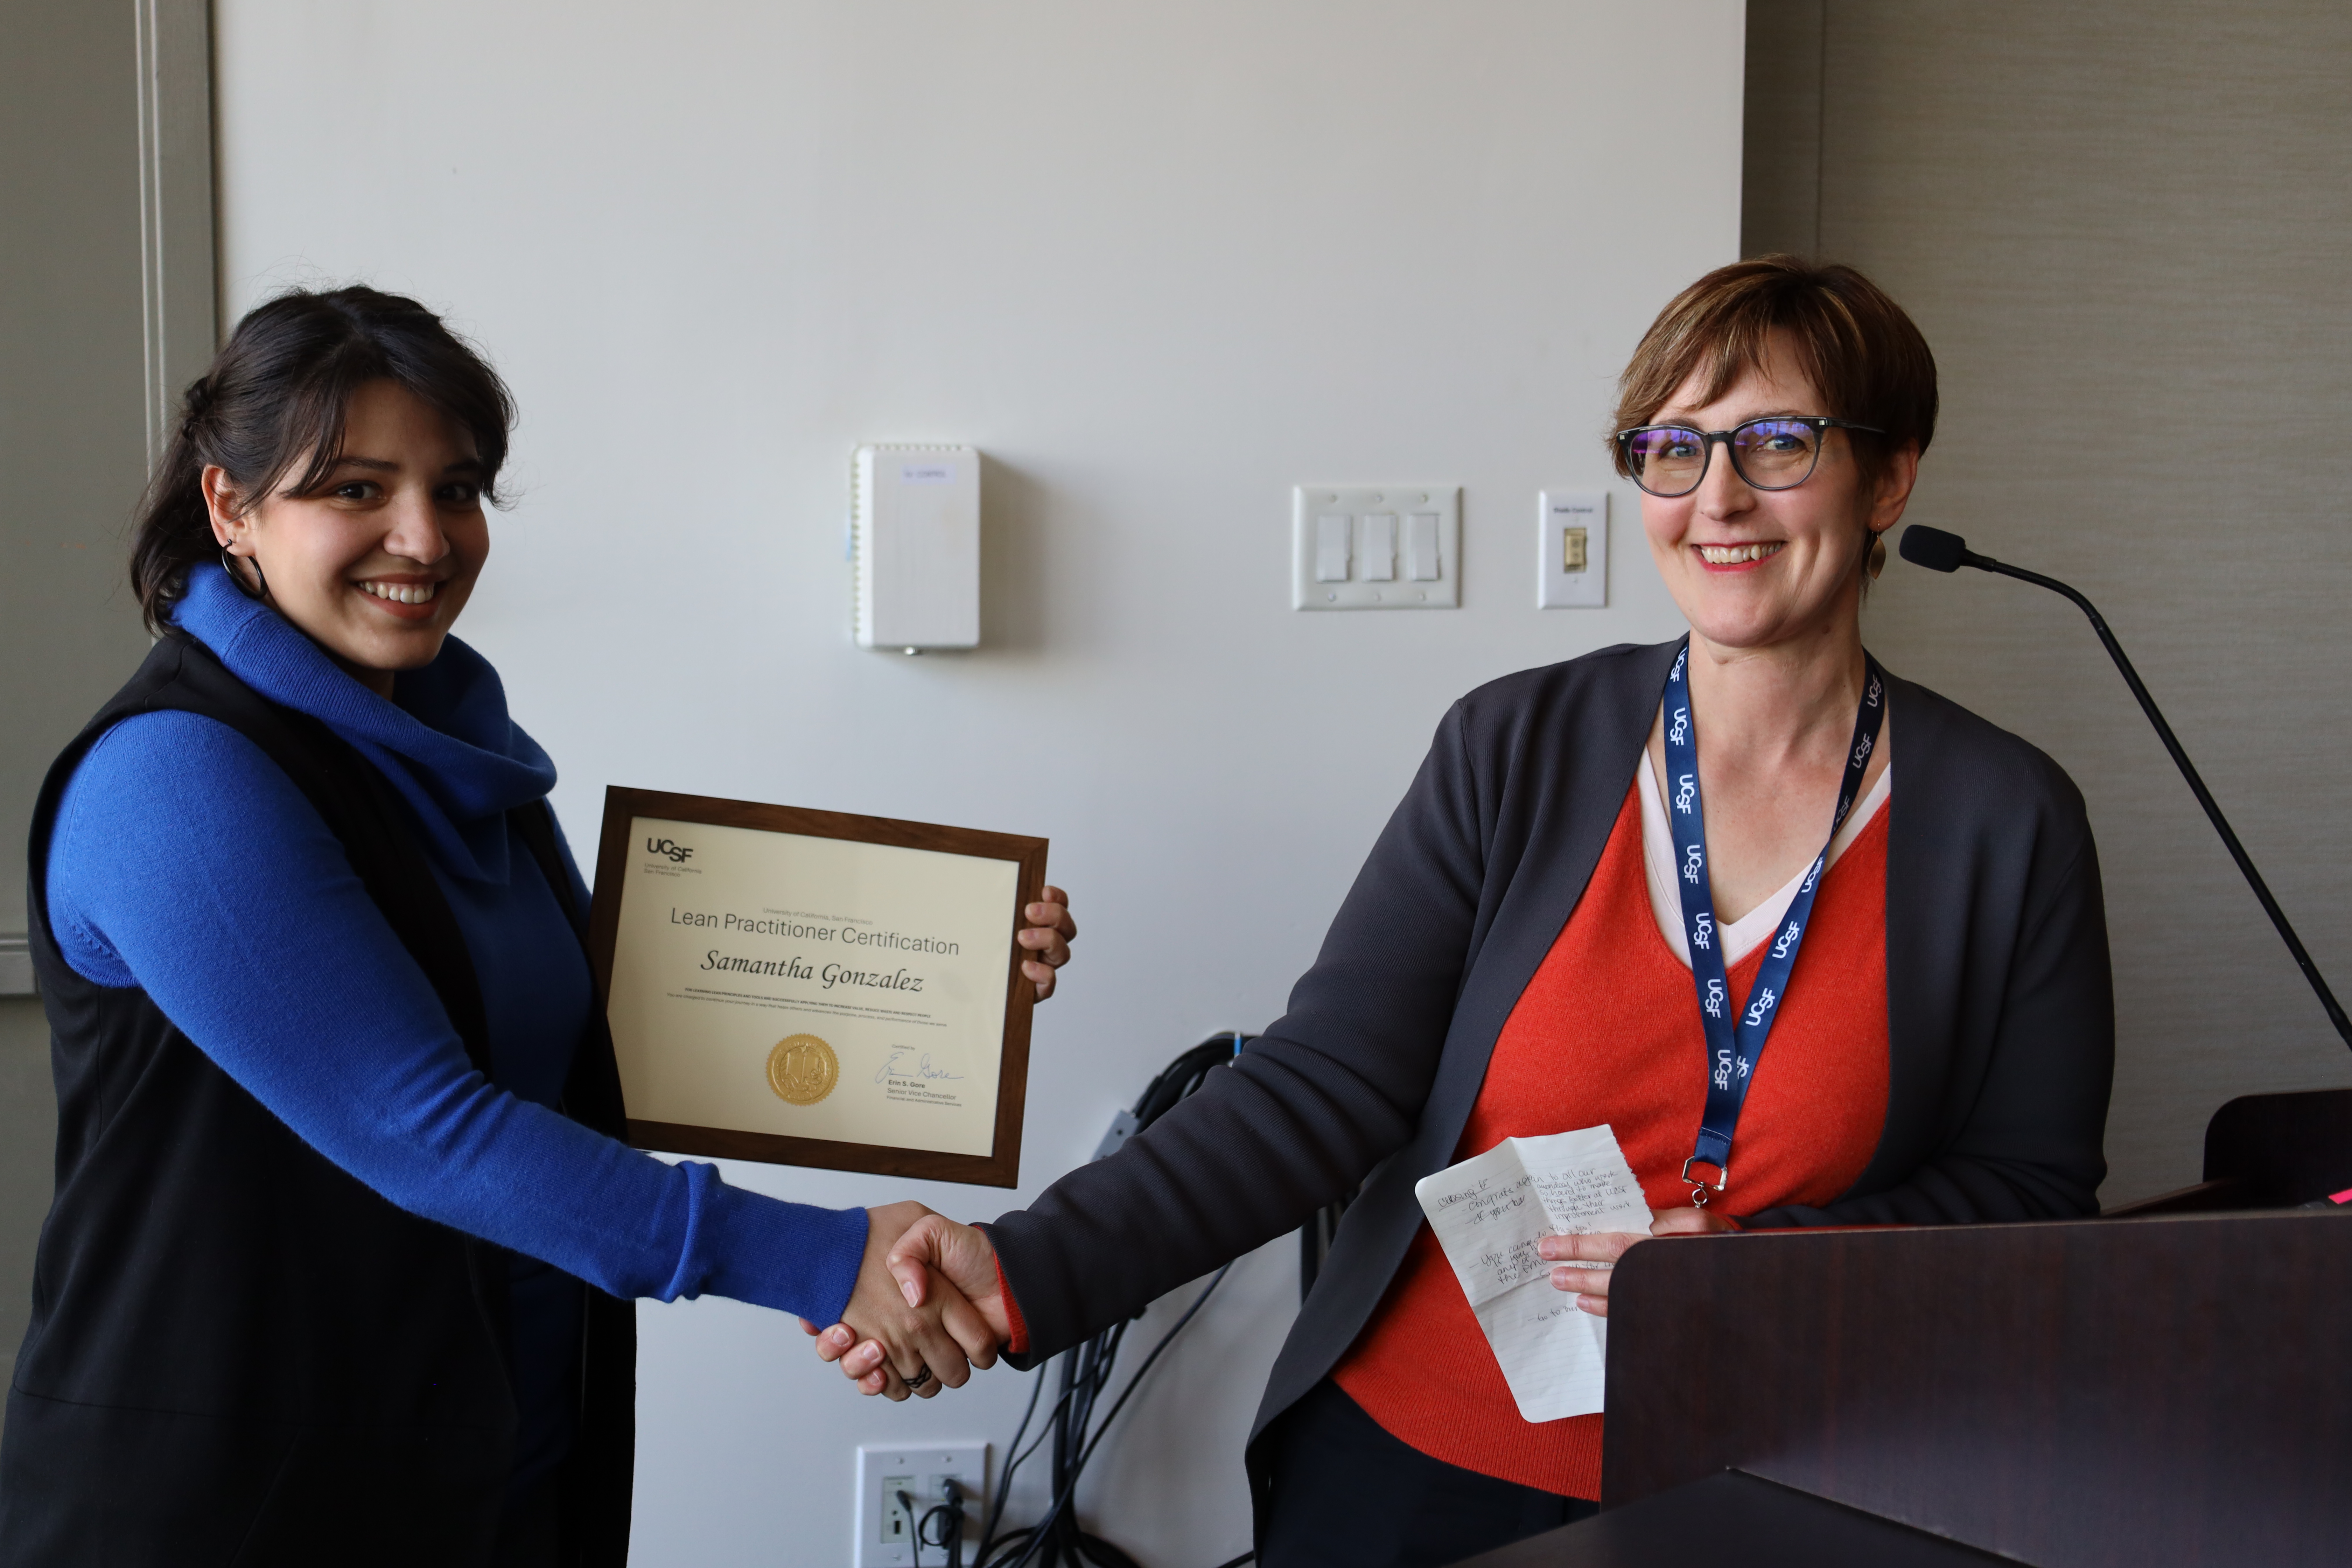 Sami Gonzalez receiving her Lean Practitioner Certificate for her project "Junior Specialist Onboarding"